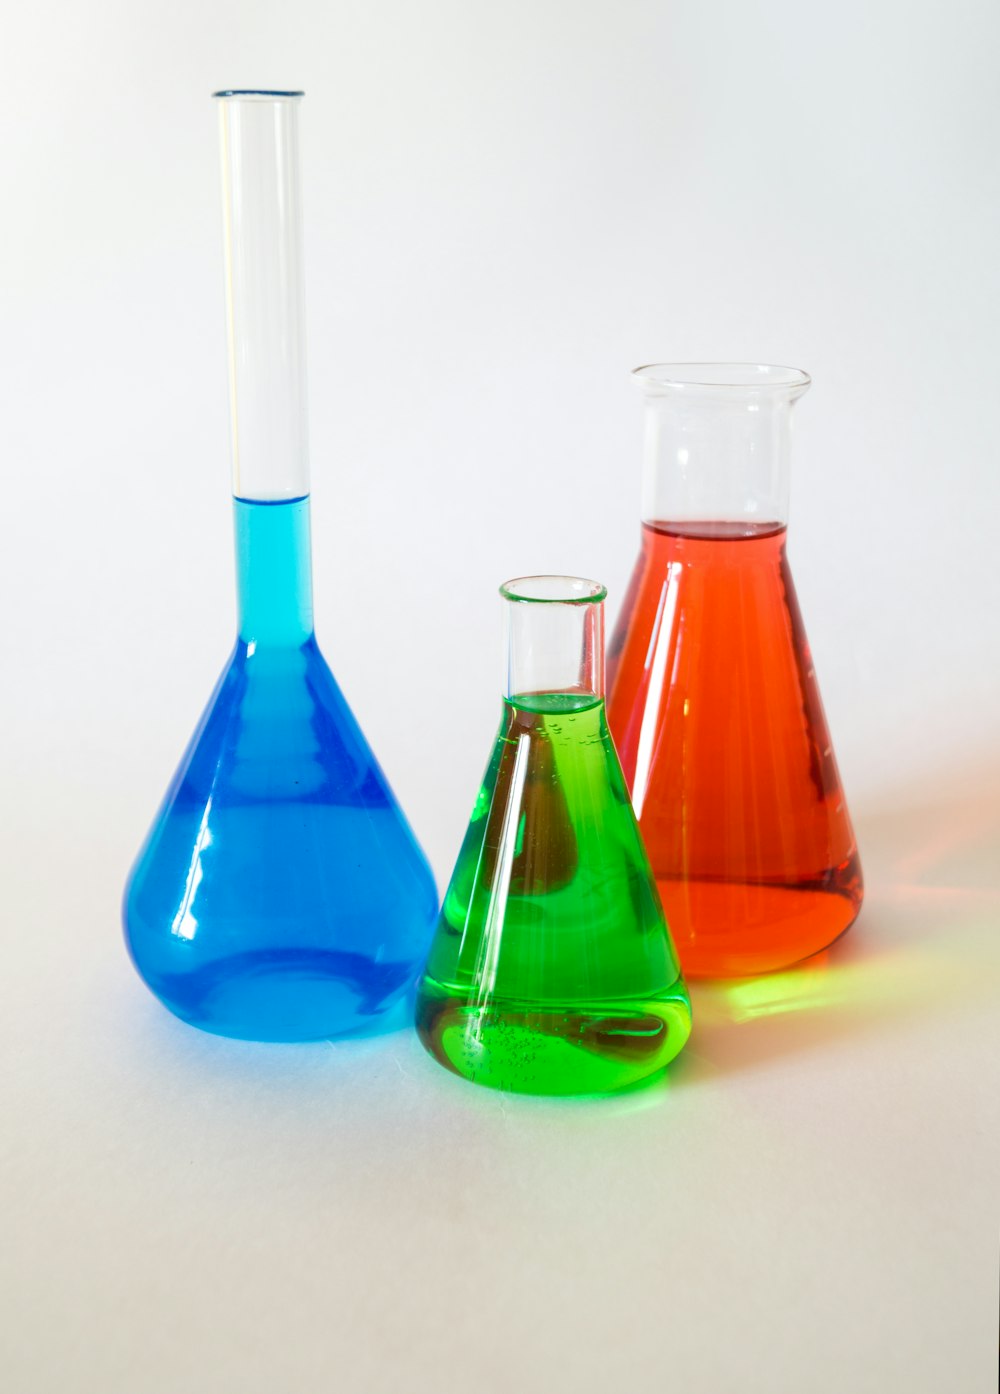 3가지 다양한 색상의 액체로 채워진 실험실 장치